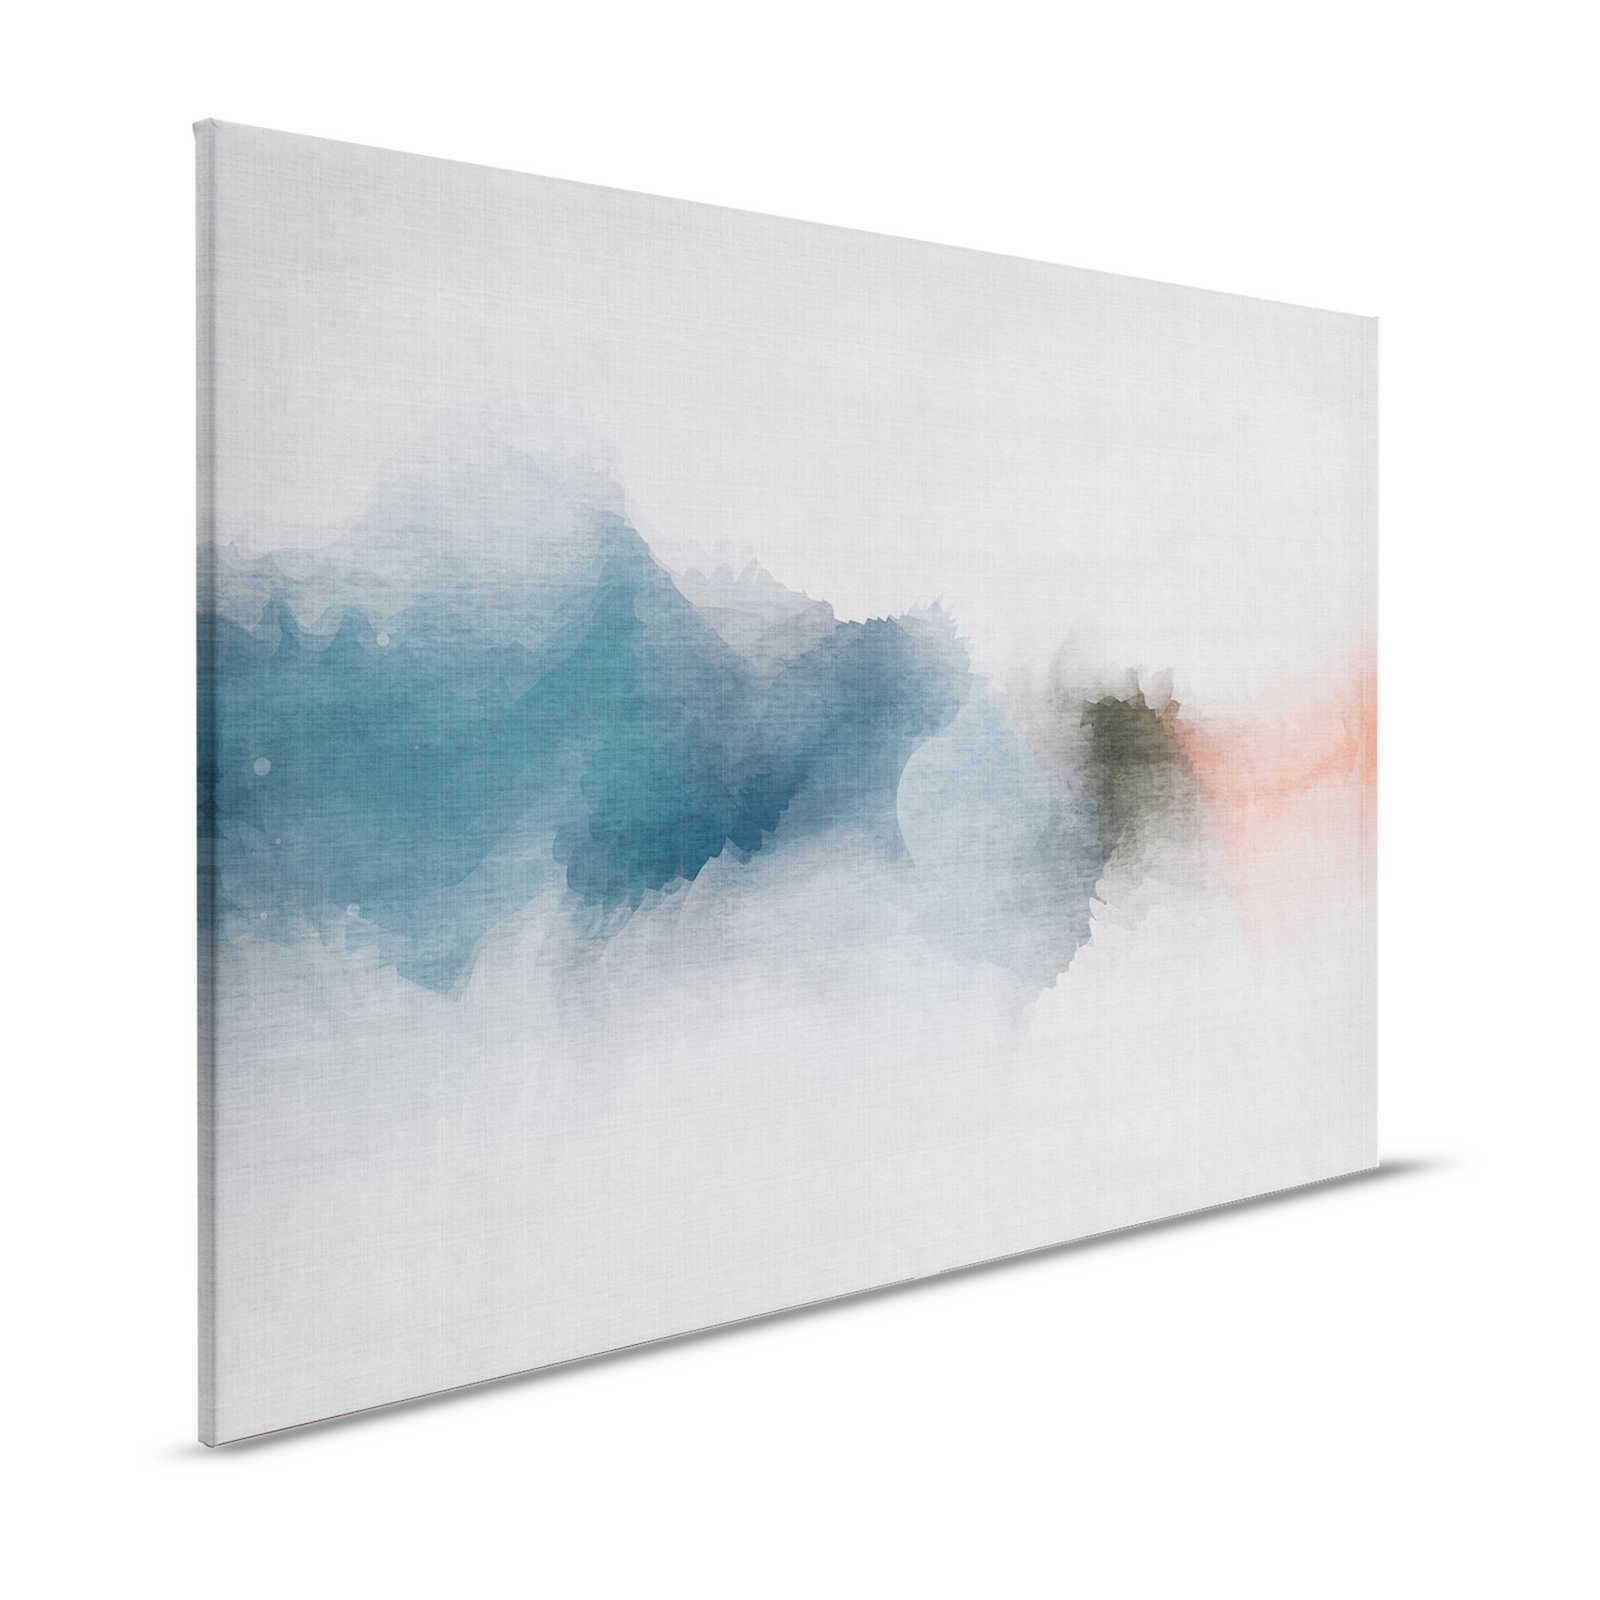 Daydream 1 - Minimalistische canvasprint in aquarelstijl - natuurlijke linnenlook - 1,20 m x 0,80 m
